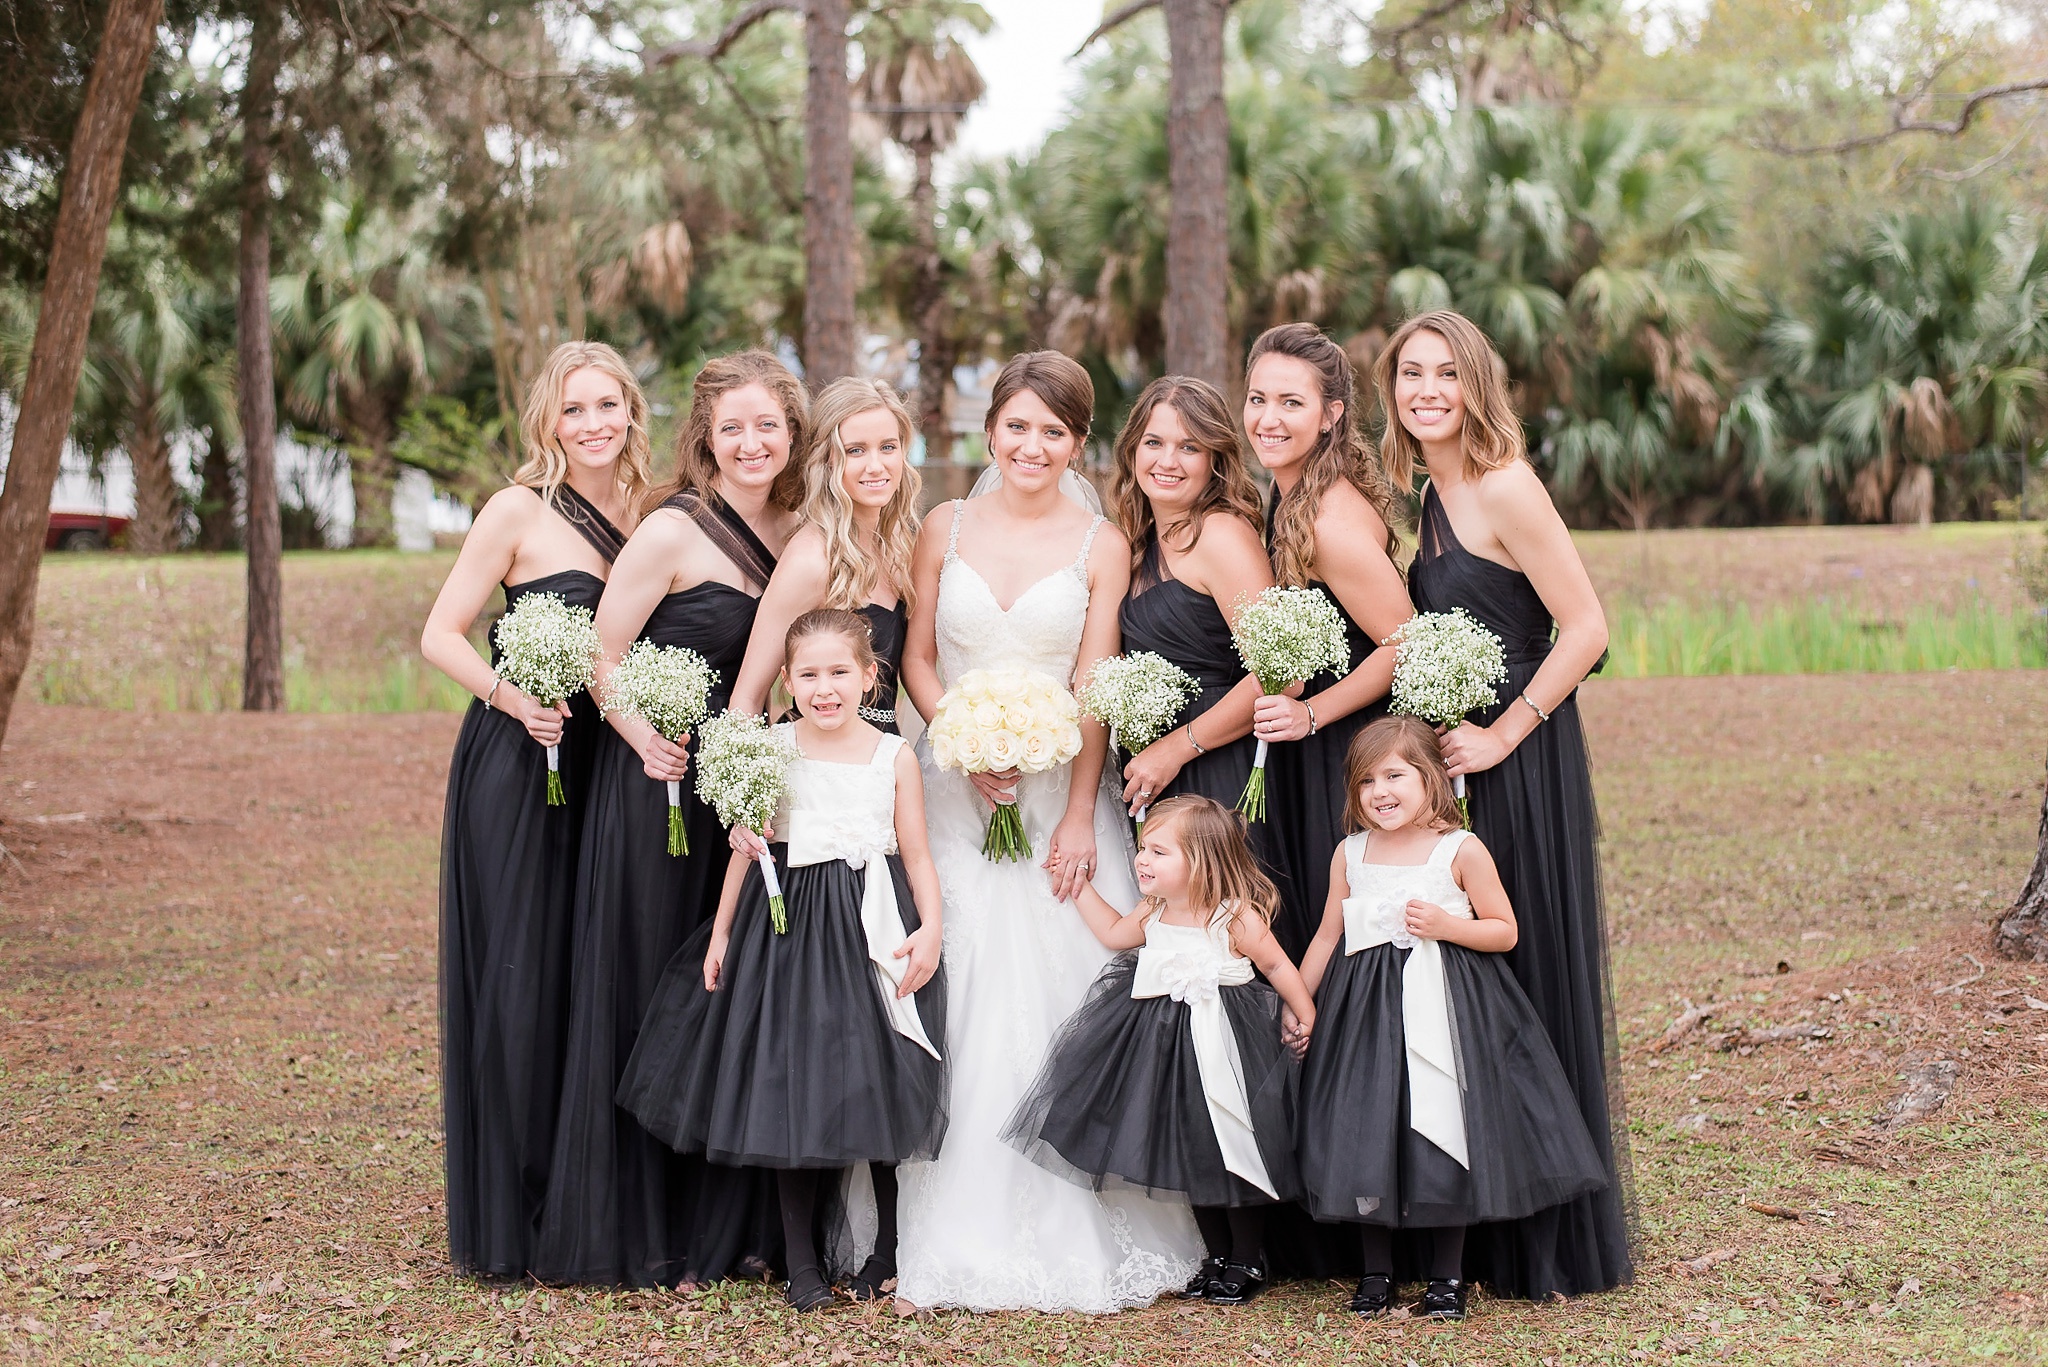 Niceville Destin Florida Wedding | Birmingham Alabama Wedding Photographers_0017.jpg